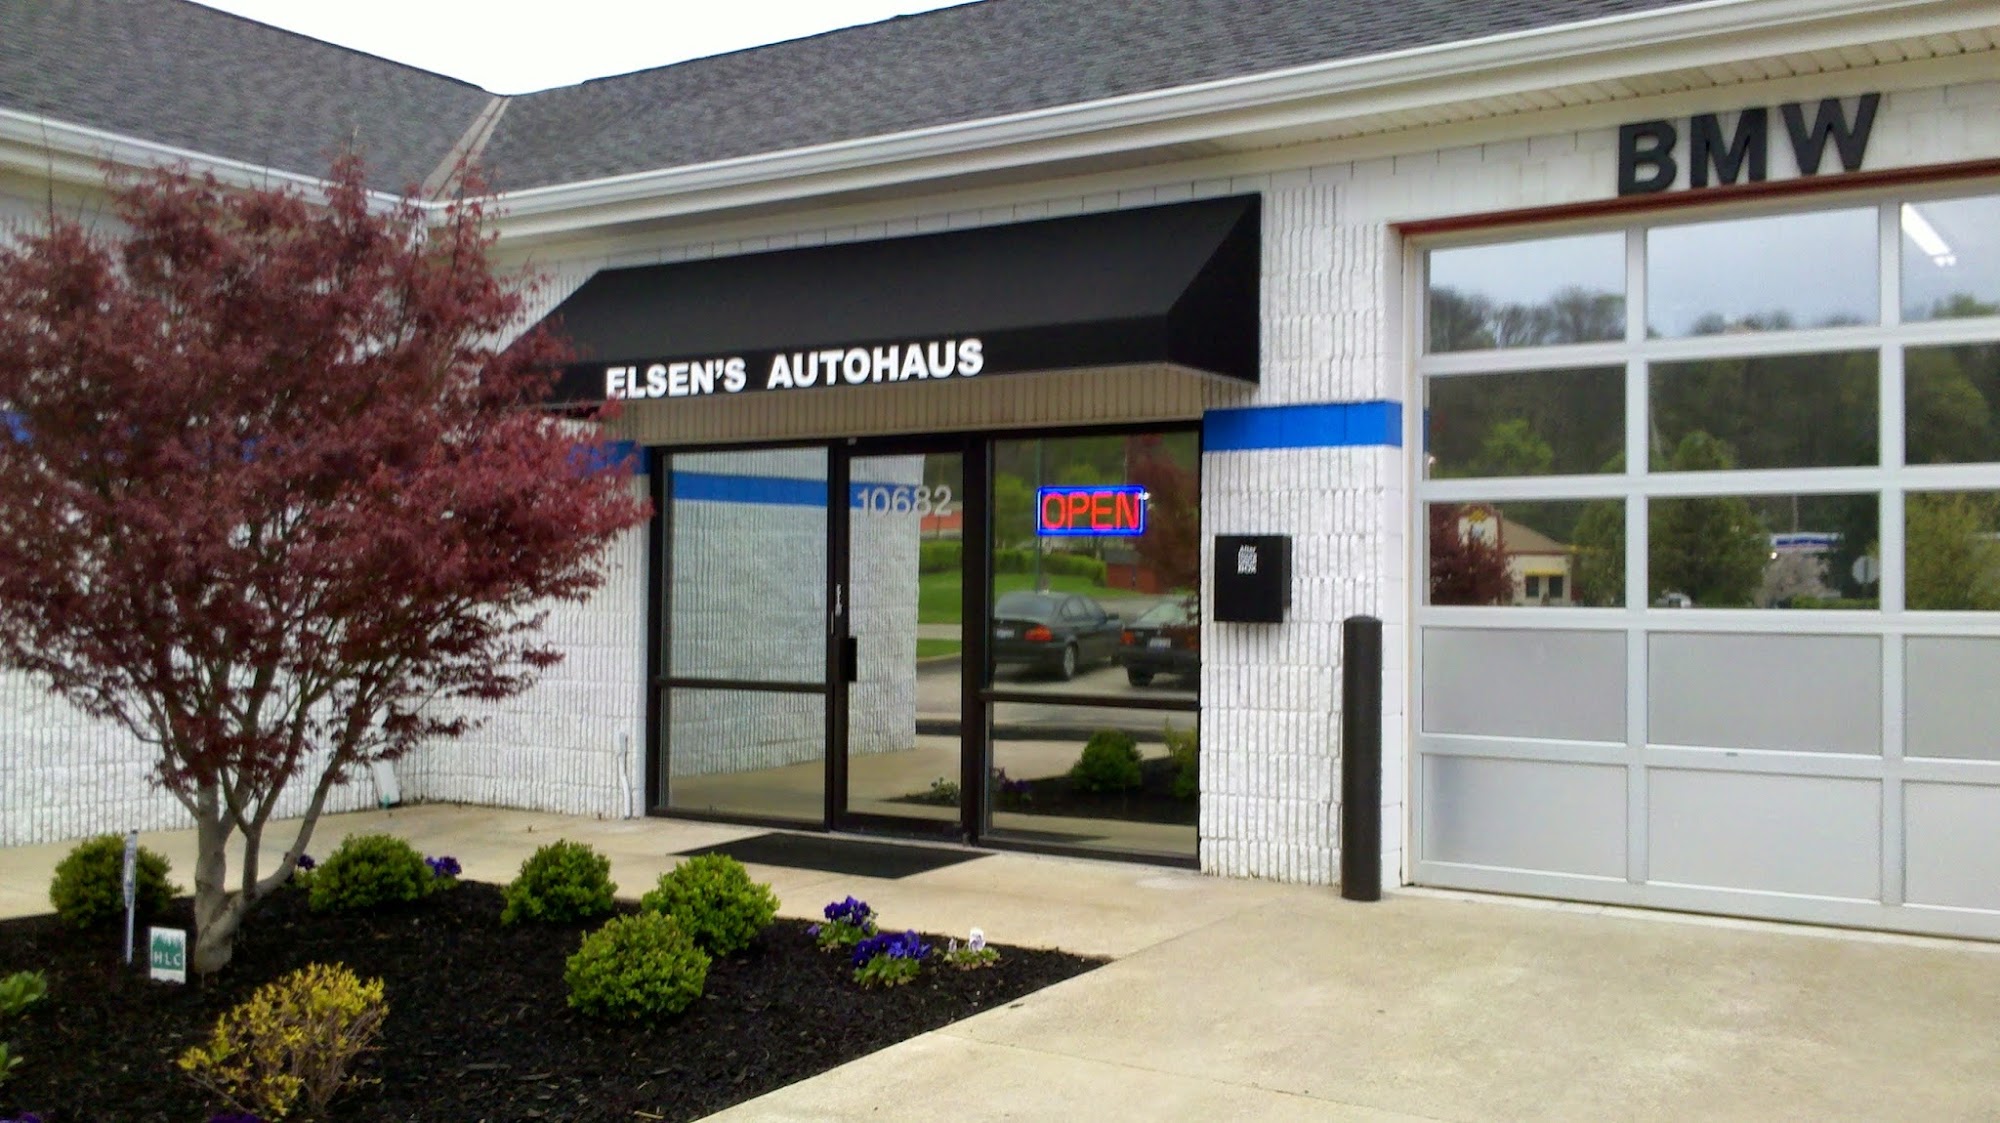 Elsen's Autohaus